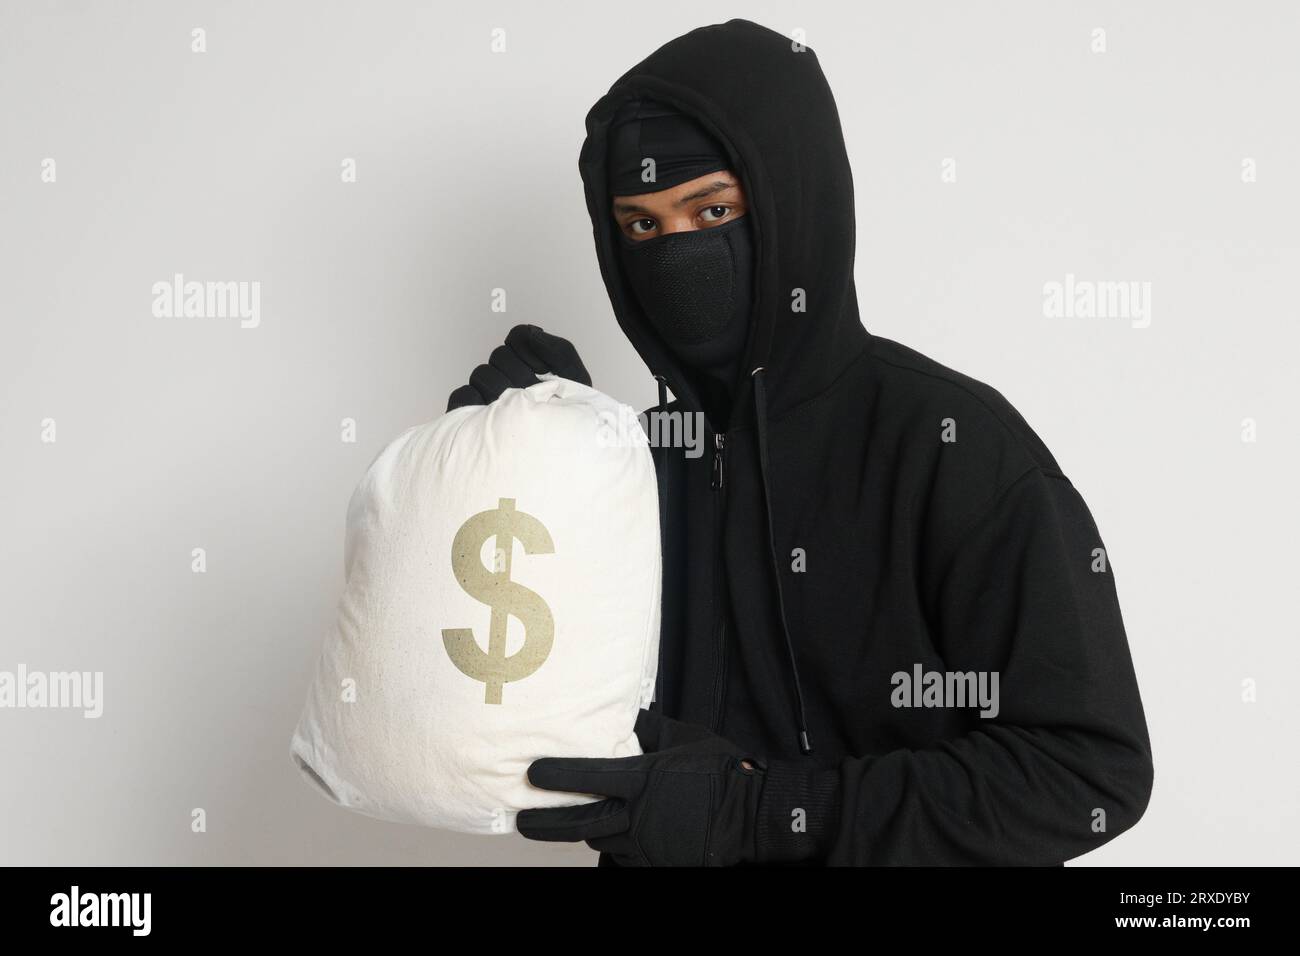 Misterioso ladro di rapinatori che indossa una felpa nera con cappuccio e una maschera e porta con sé una borsa piena di soldi. Immagine isolata su sfondo grigio Foto Stock